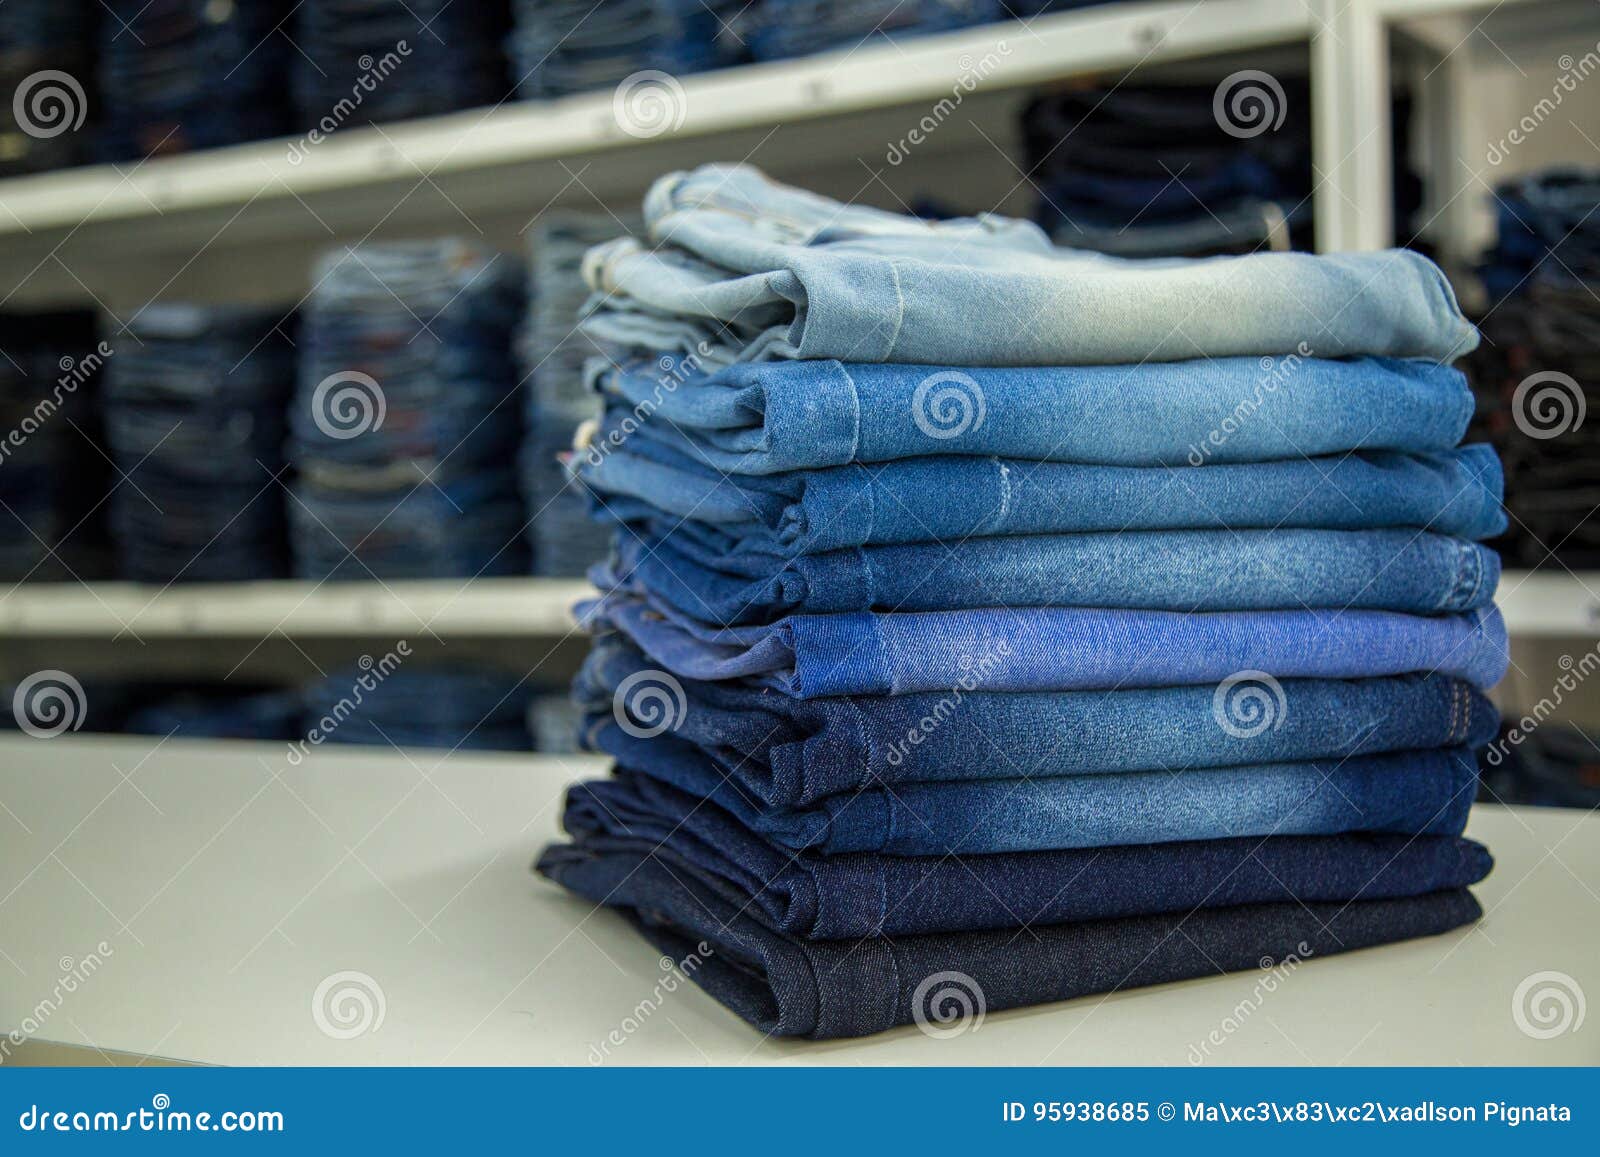 Jeans Cotton Fachion Texture Stock Image - Image of fachion, cloth ...